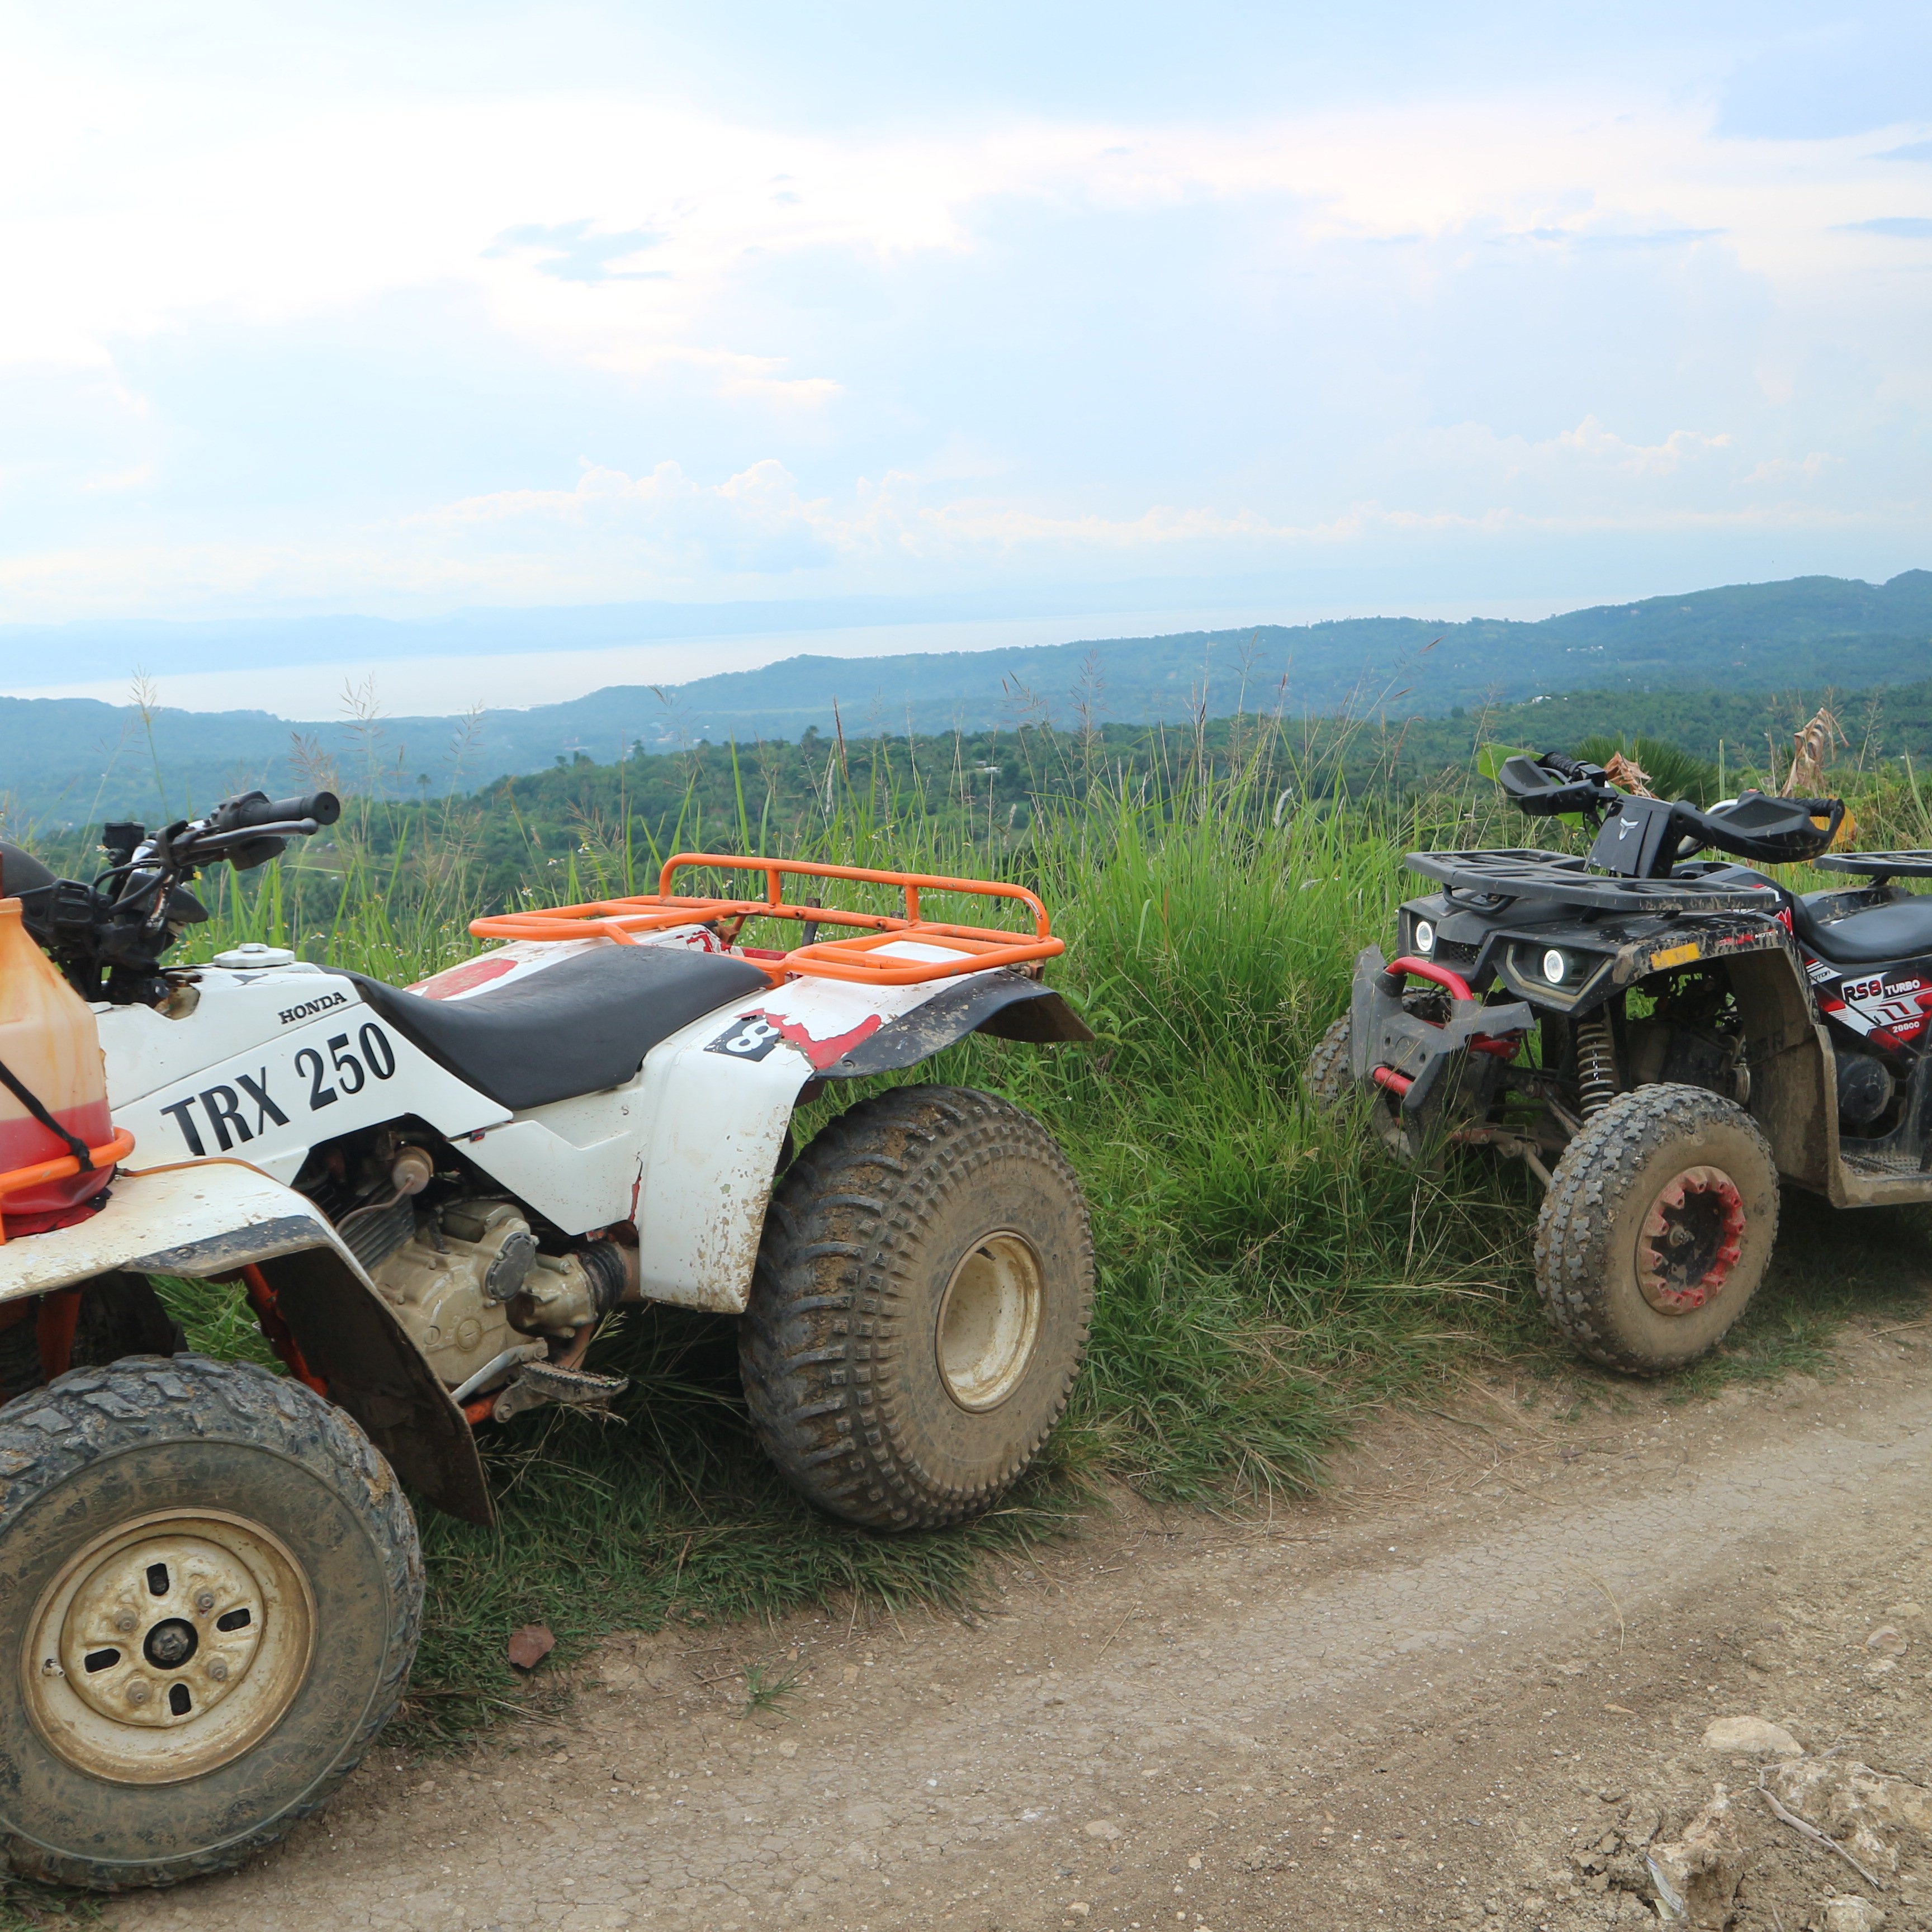 ATV Adventure in Barili